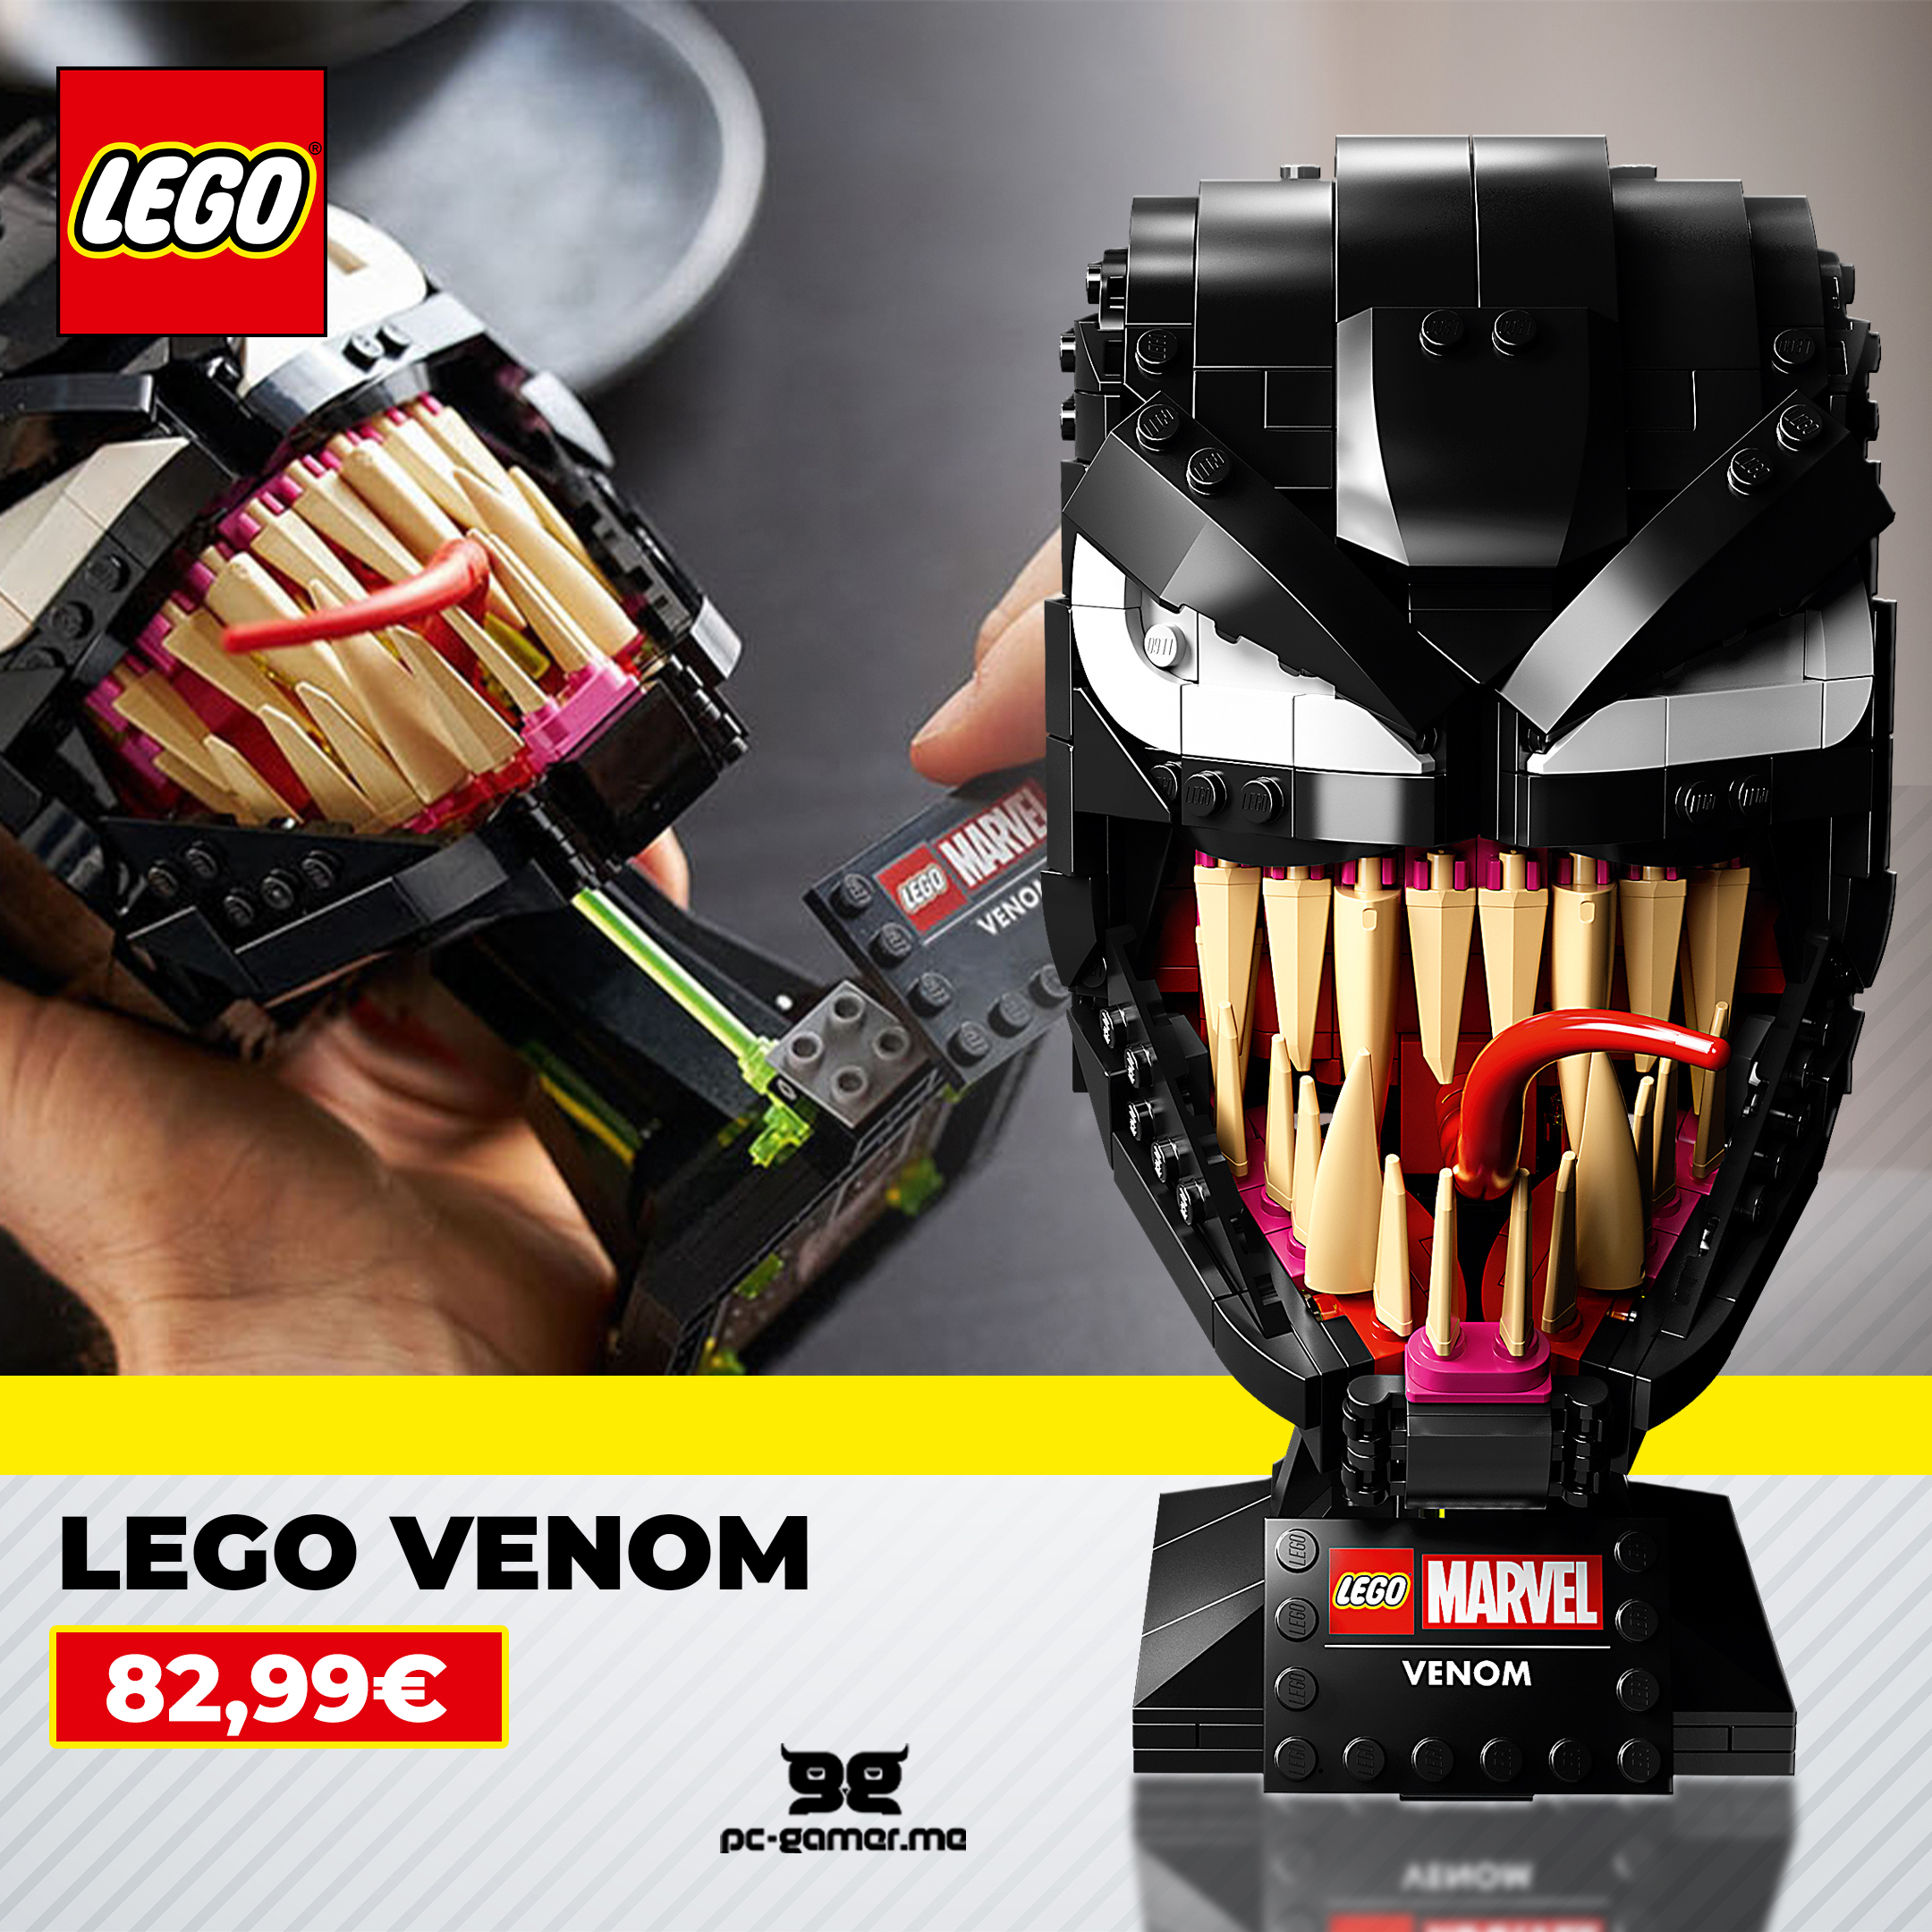  LEGO Venom